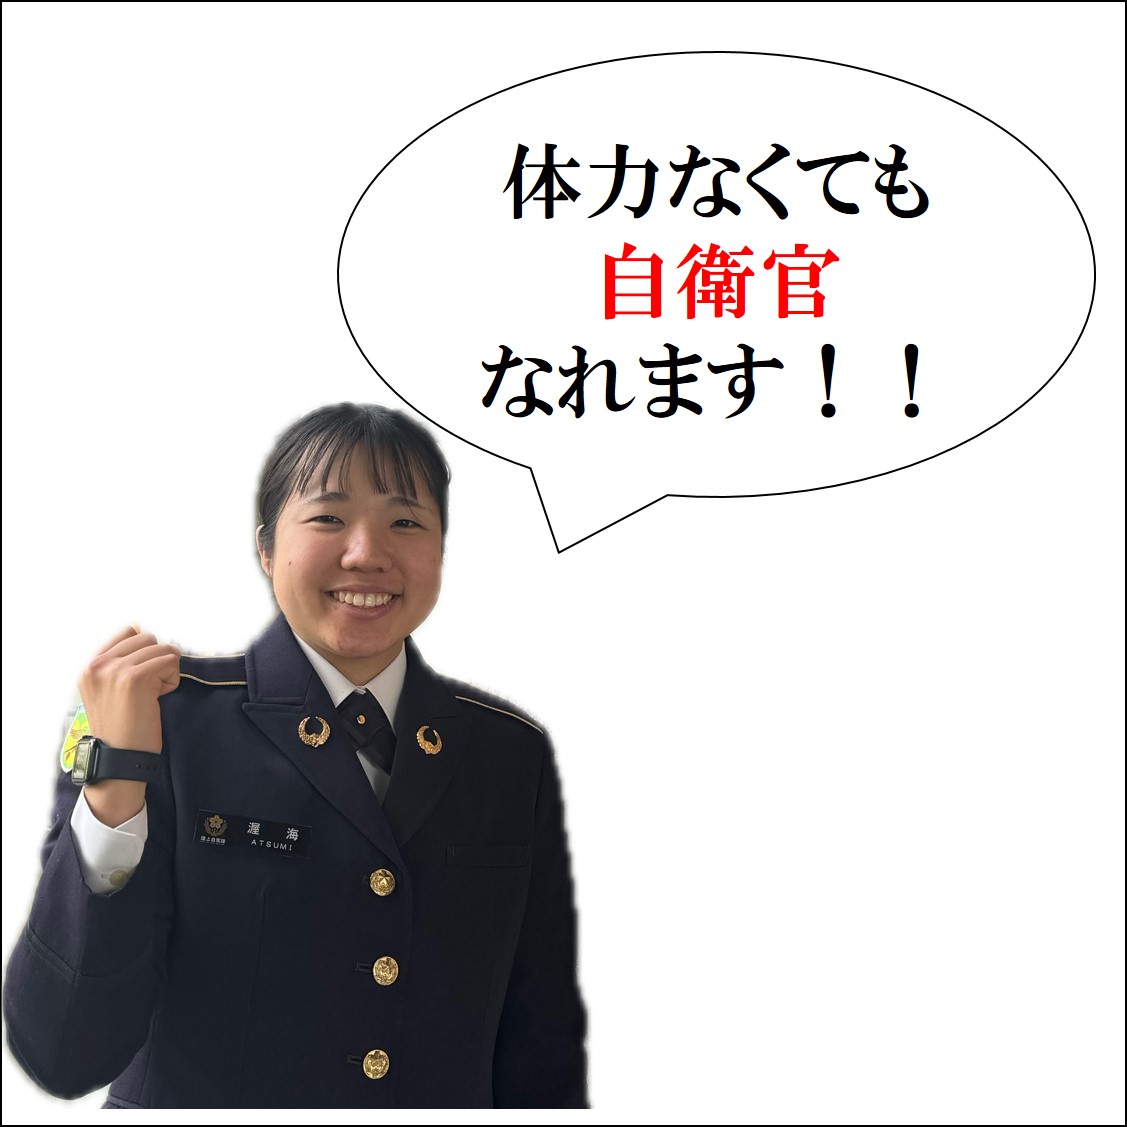 tokyo_pco tweet picture